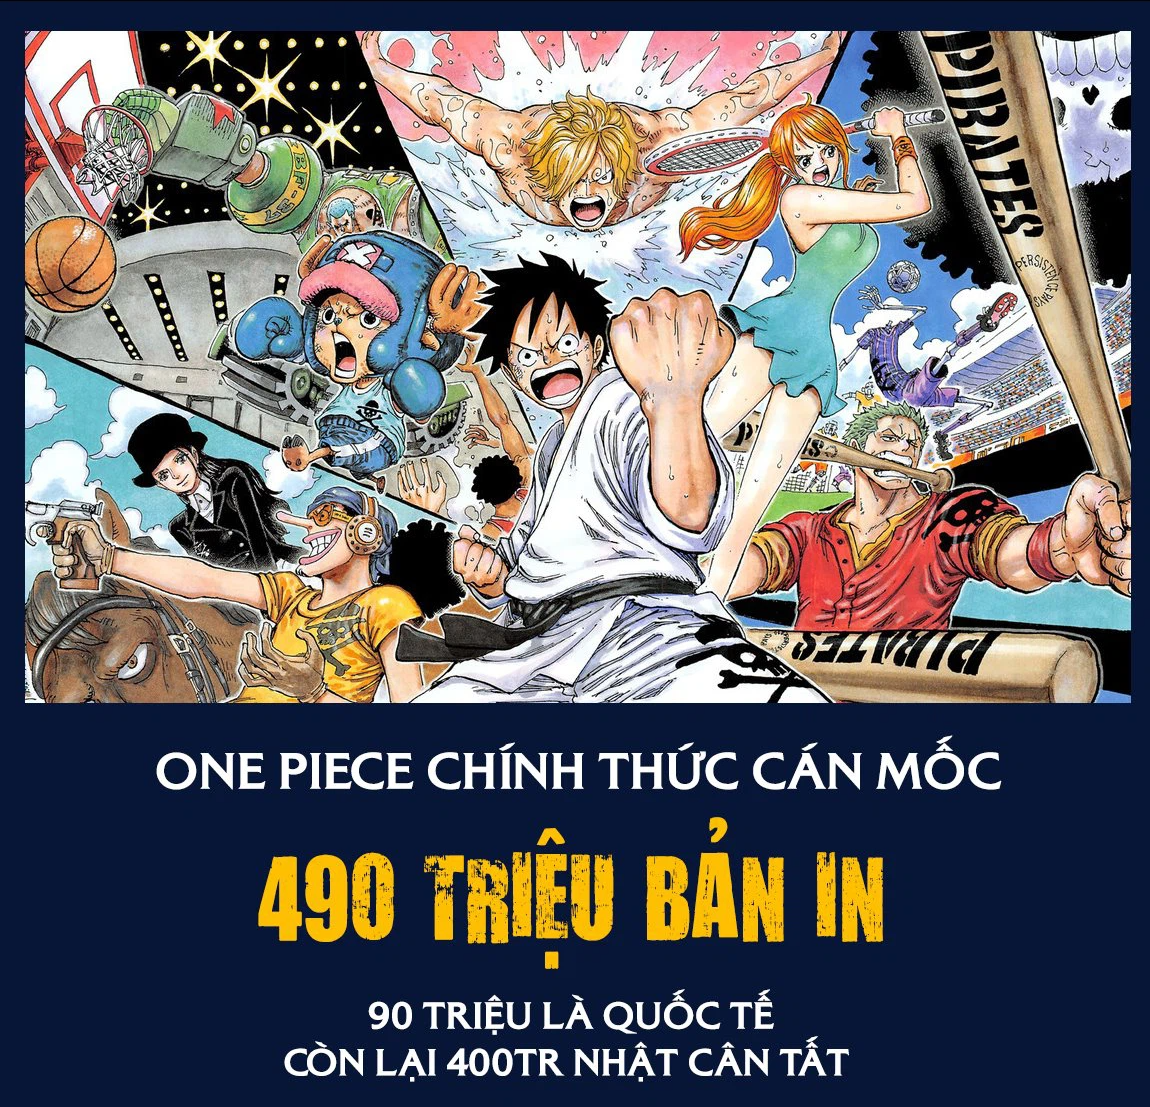 One Piece vừa đạt kỷ lục 490 triệu bản in truyện tranh toàn cầu. Điều này chứng tỏ sức thu hút của tác phẩm này không hề giảm sút. Cùng đến với những chàng hải tặc kiên cường, đầy mạo hiểm và ly kỳ, chắc chắn sẽ là một trải nghiệm thú vị.